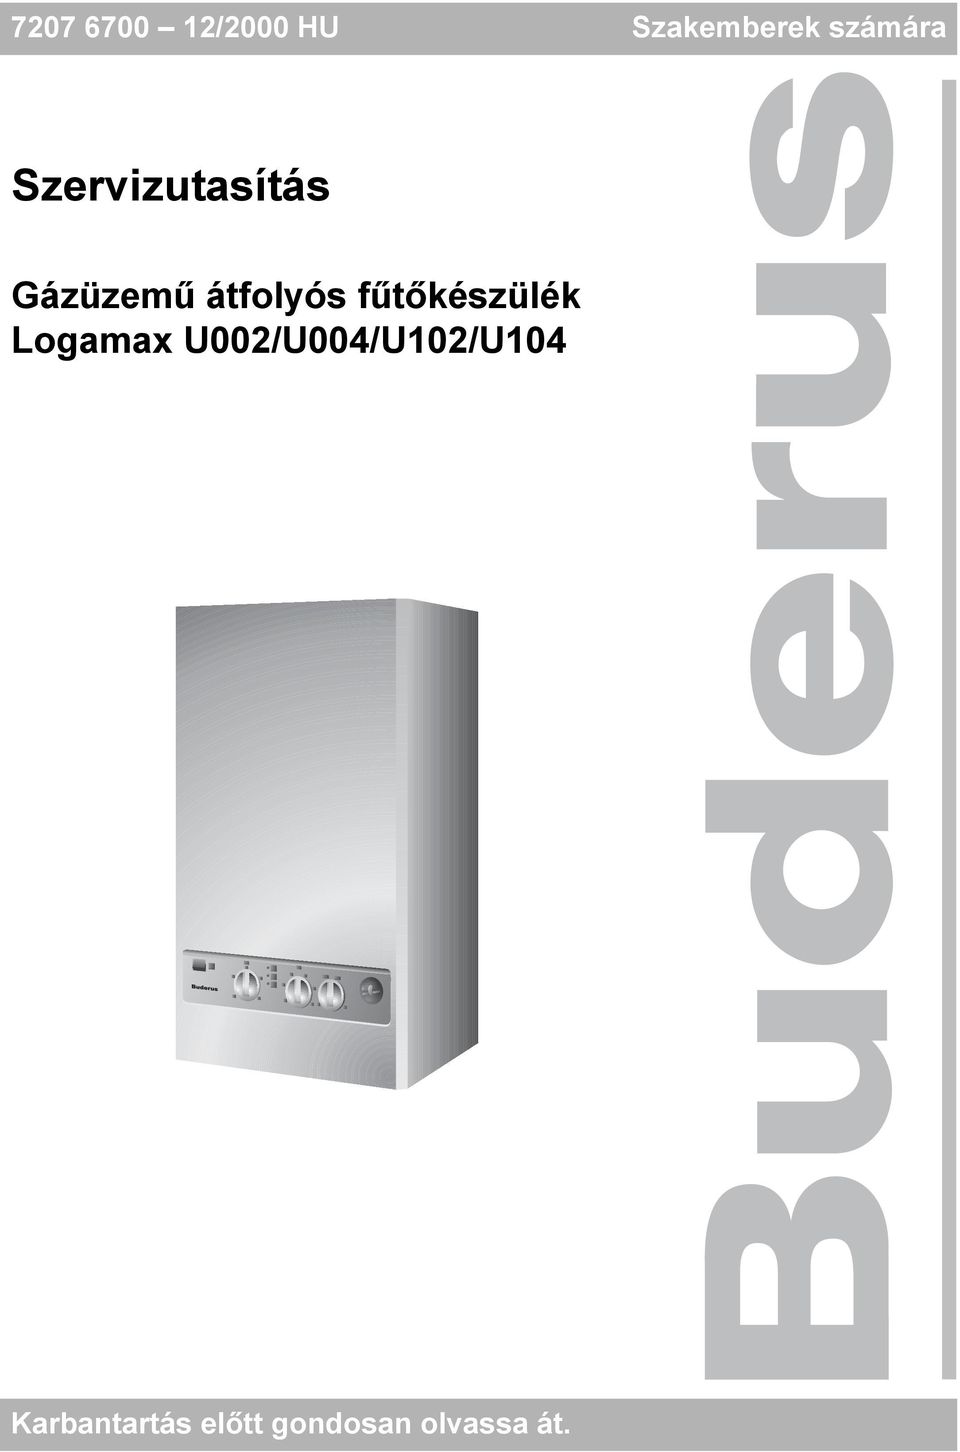 Szervizutasítás. Gázüzemű átfolyós fűtőkészülék Logamax U002/U004/U102/U  /2000 HU Szakemberek számára - PDF Ingyenes letöltés